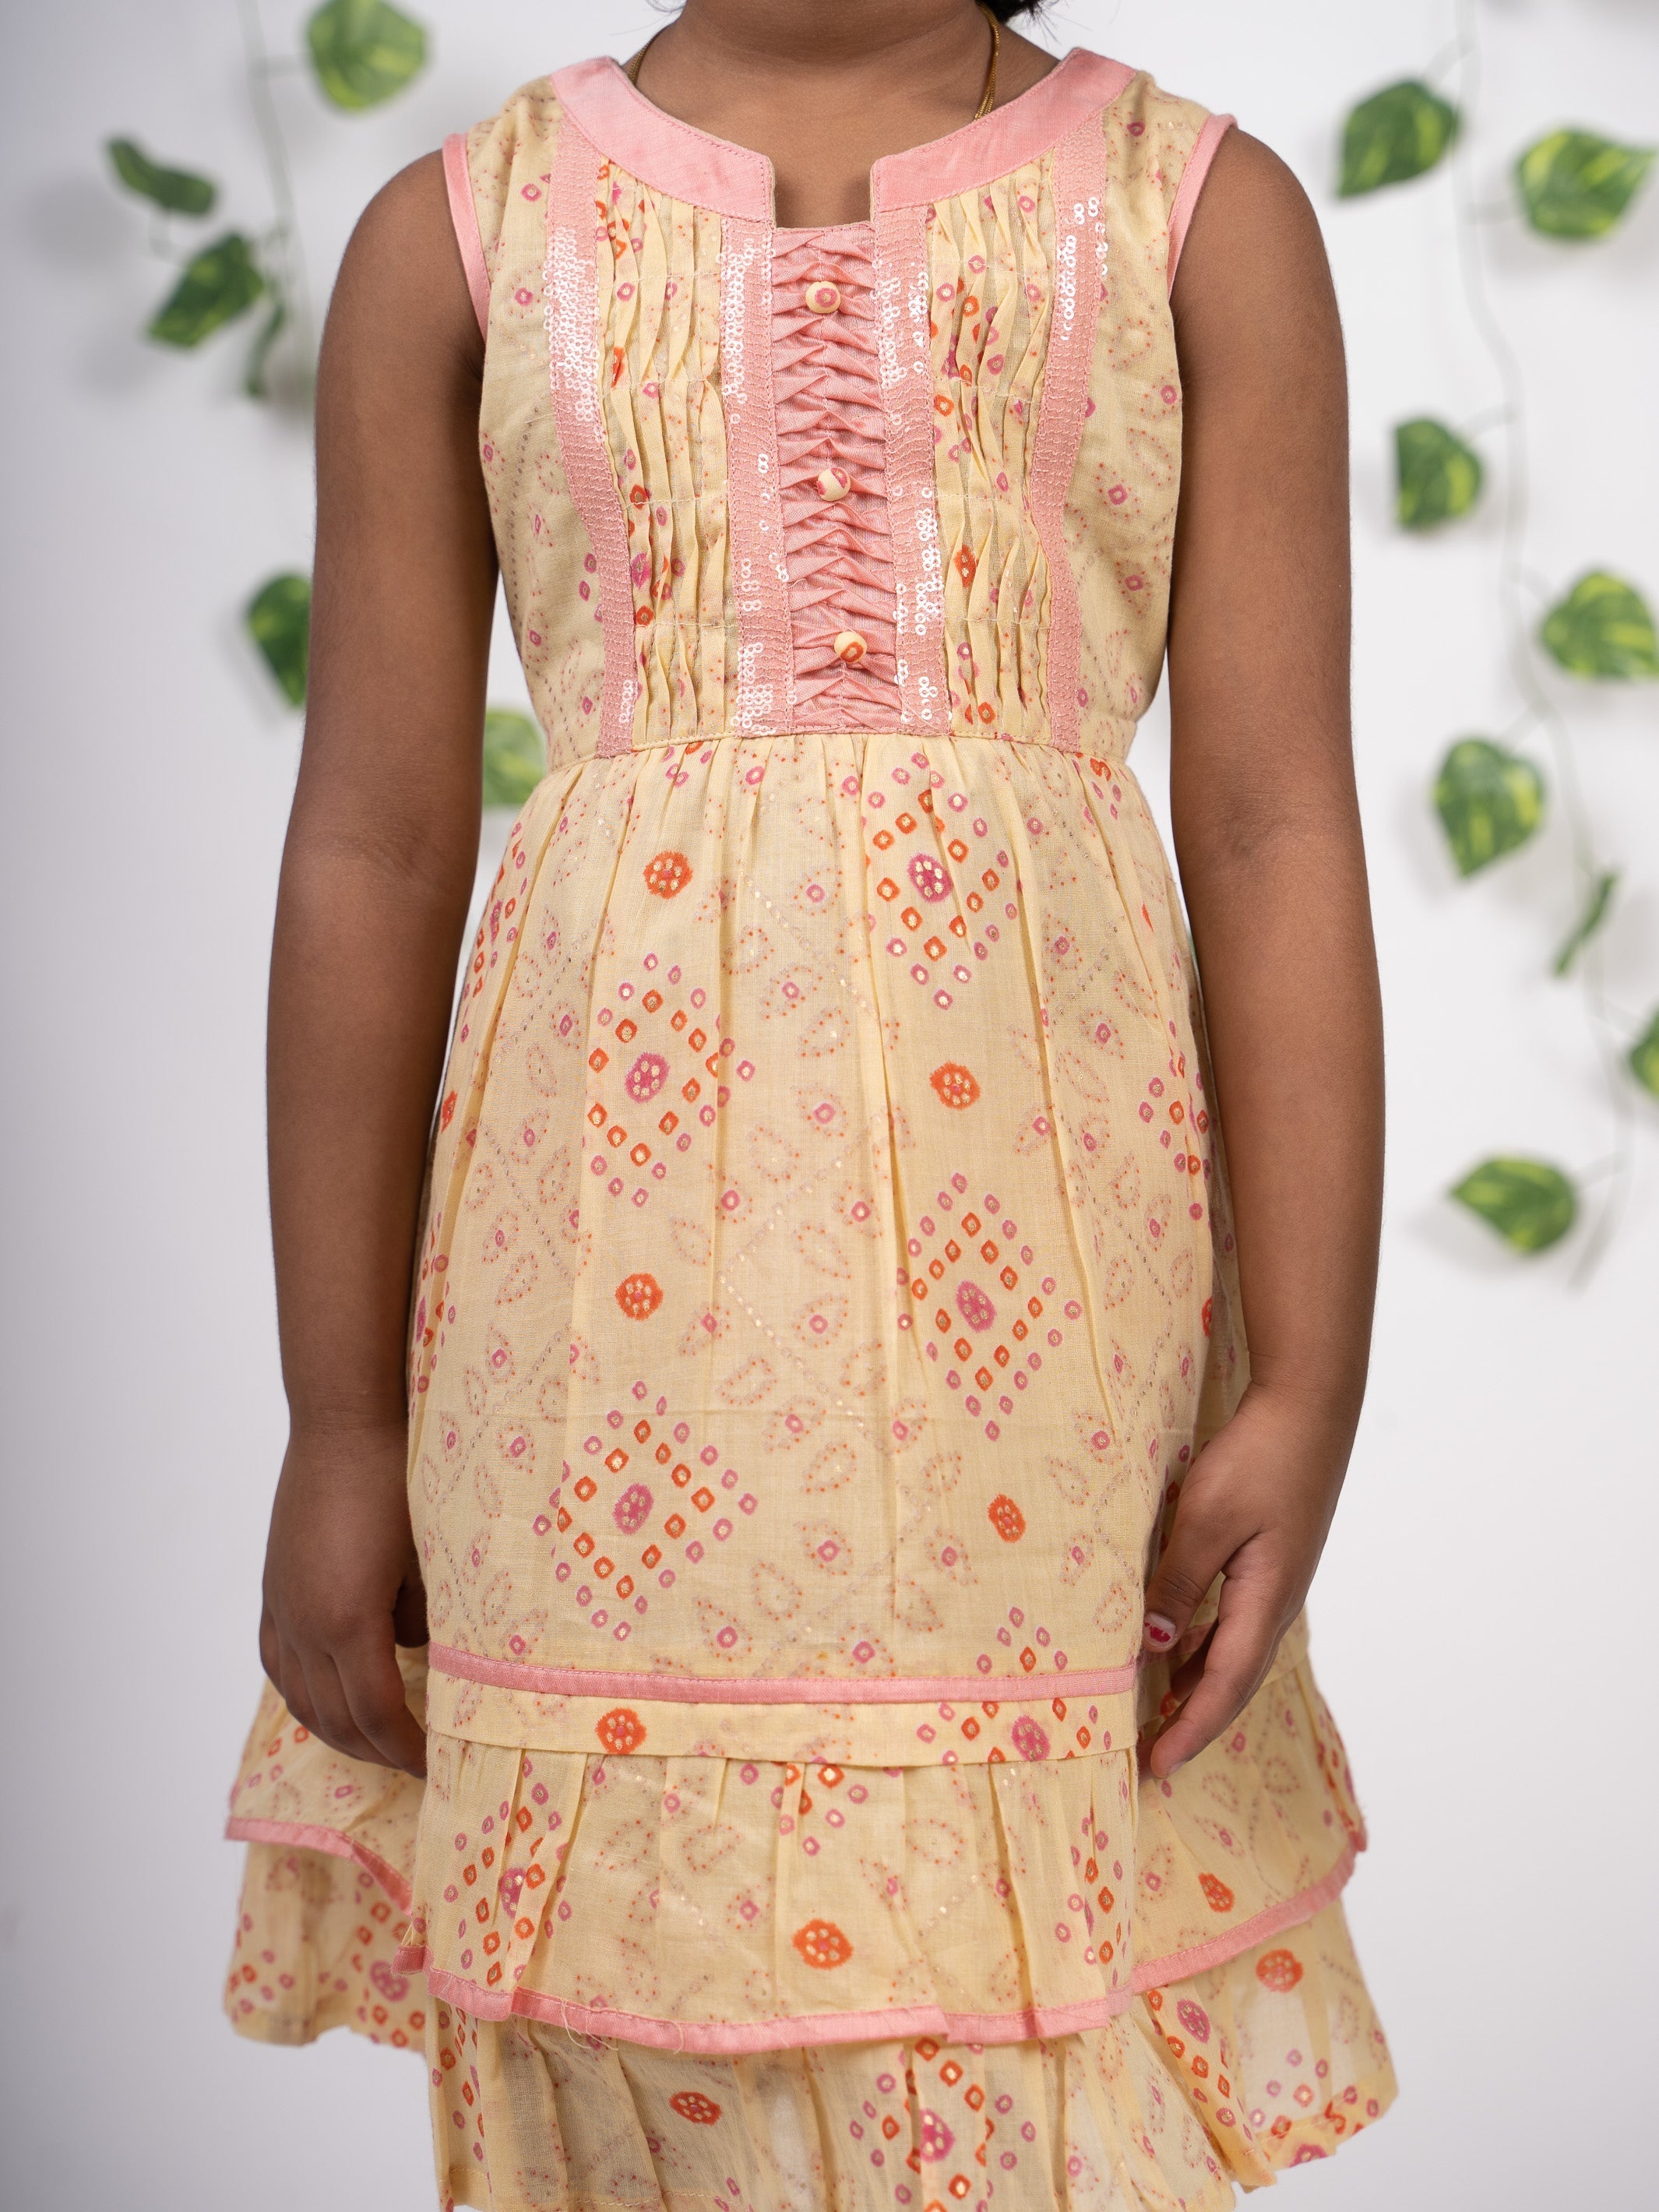 Cutedoll Pink Net Embroidered Kids Baby Frock Dress — cutedoll